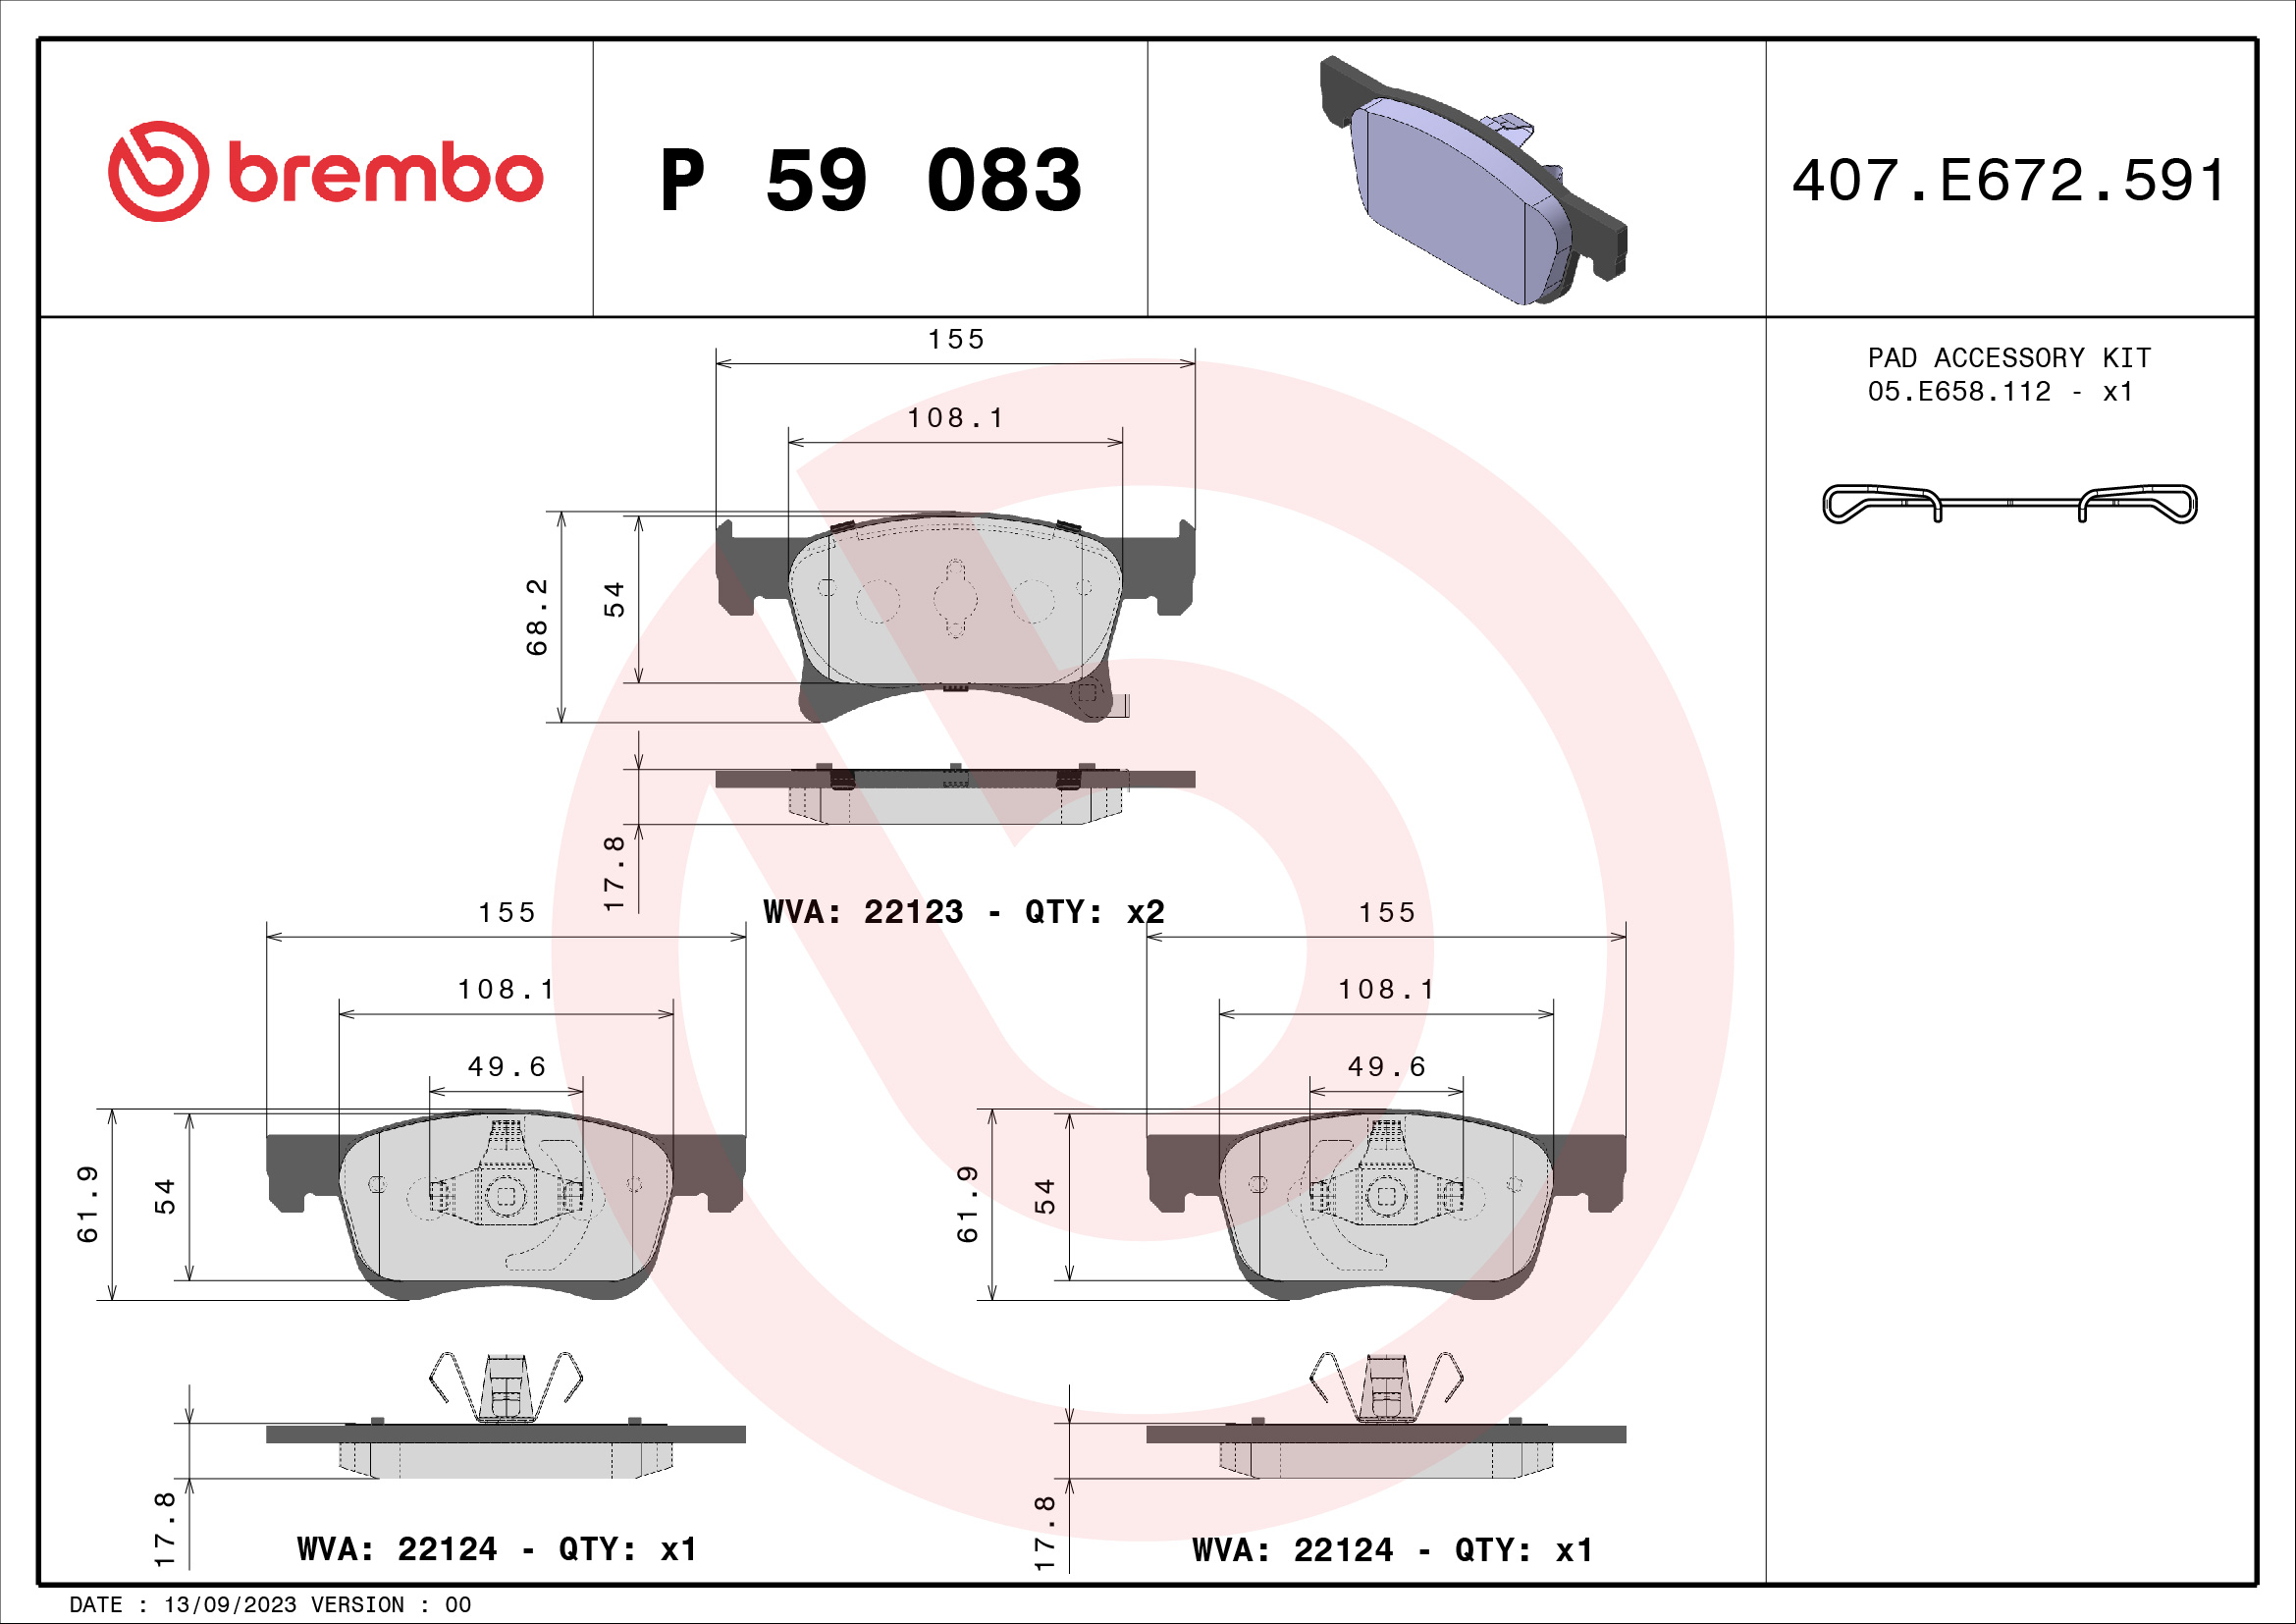 BREMBO P 59 083 Kit...